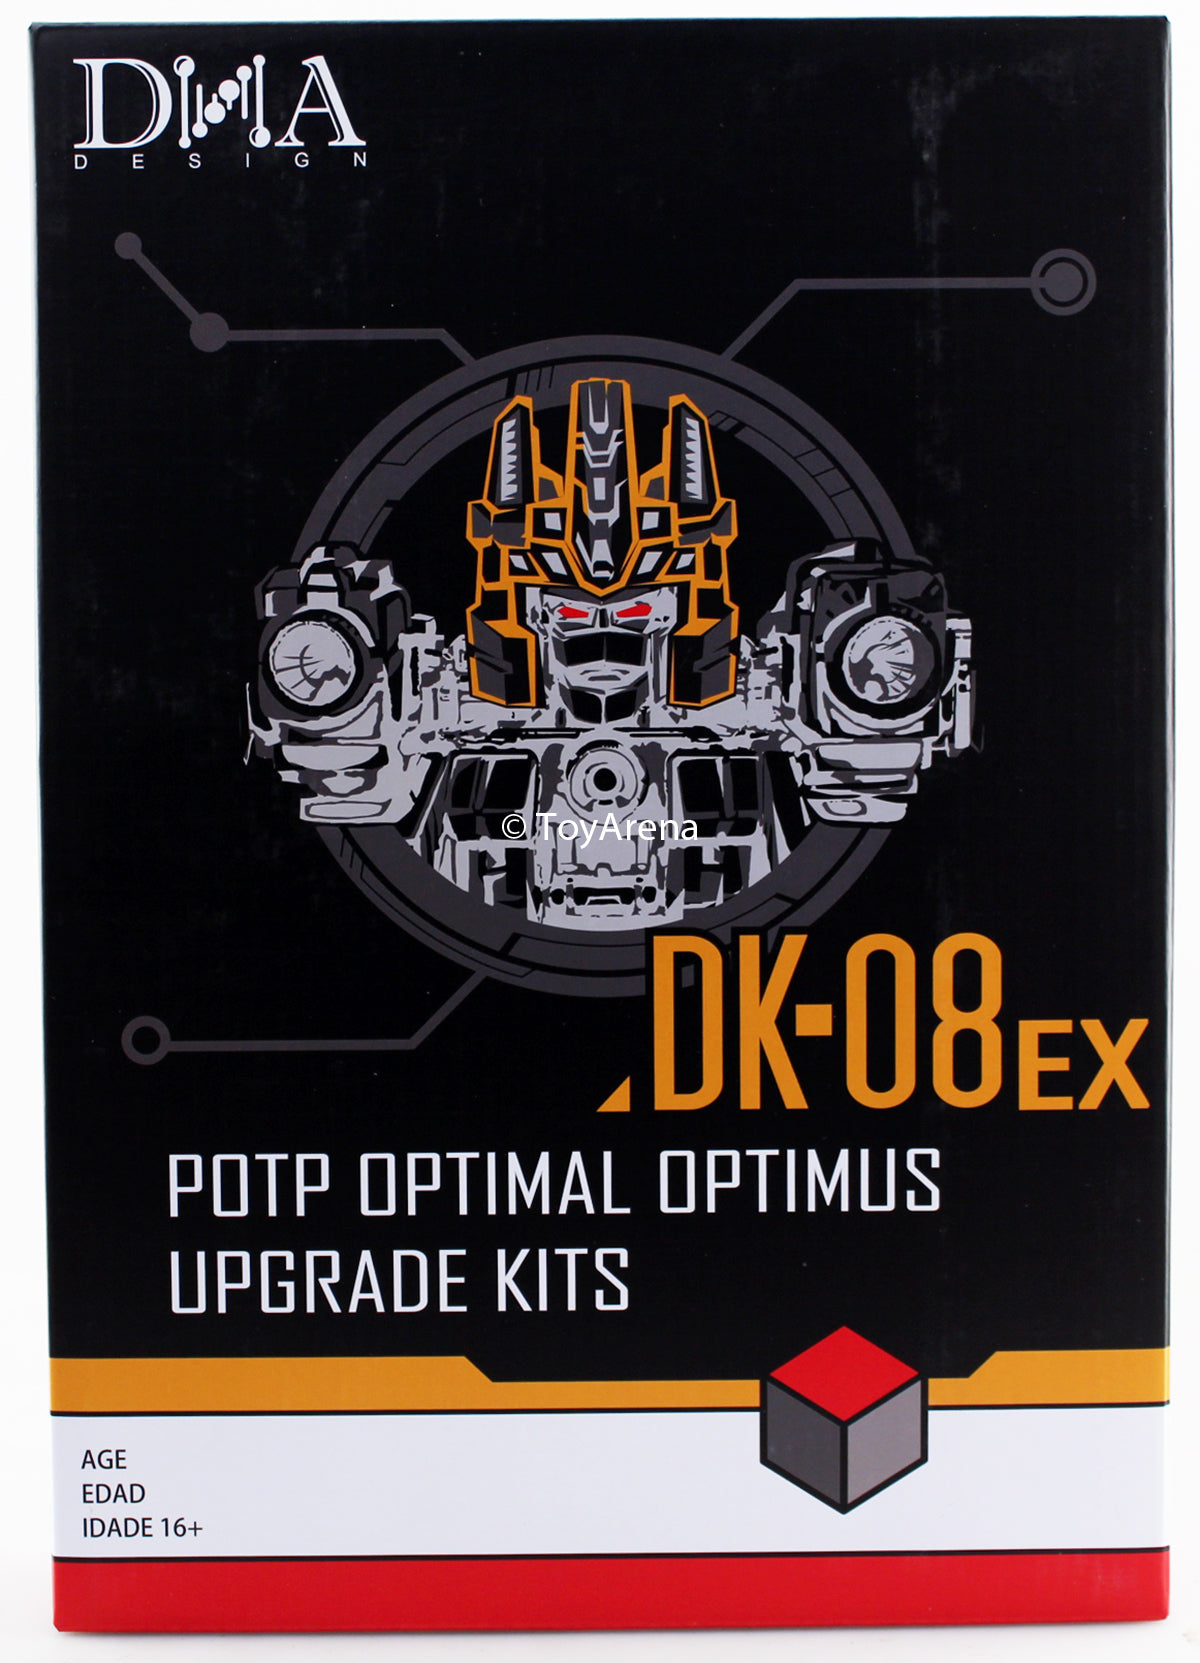 DNA Designs DK-08EX Upgrade Kit for POTP SDCC/ PP-43 Optimal Optimus